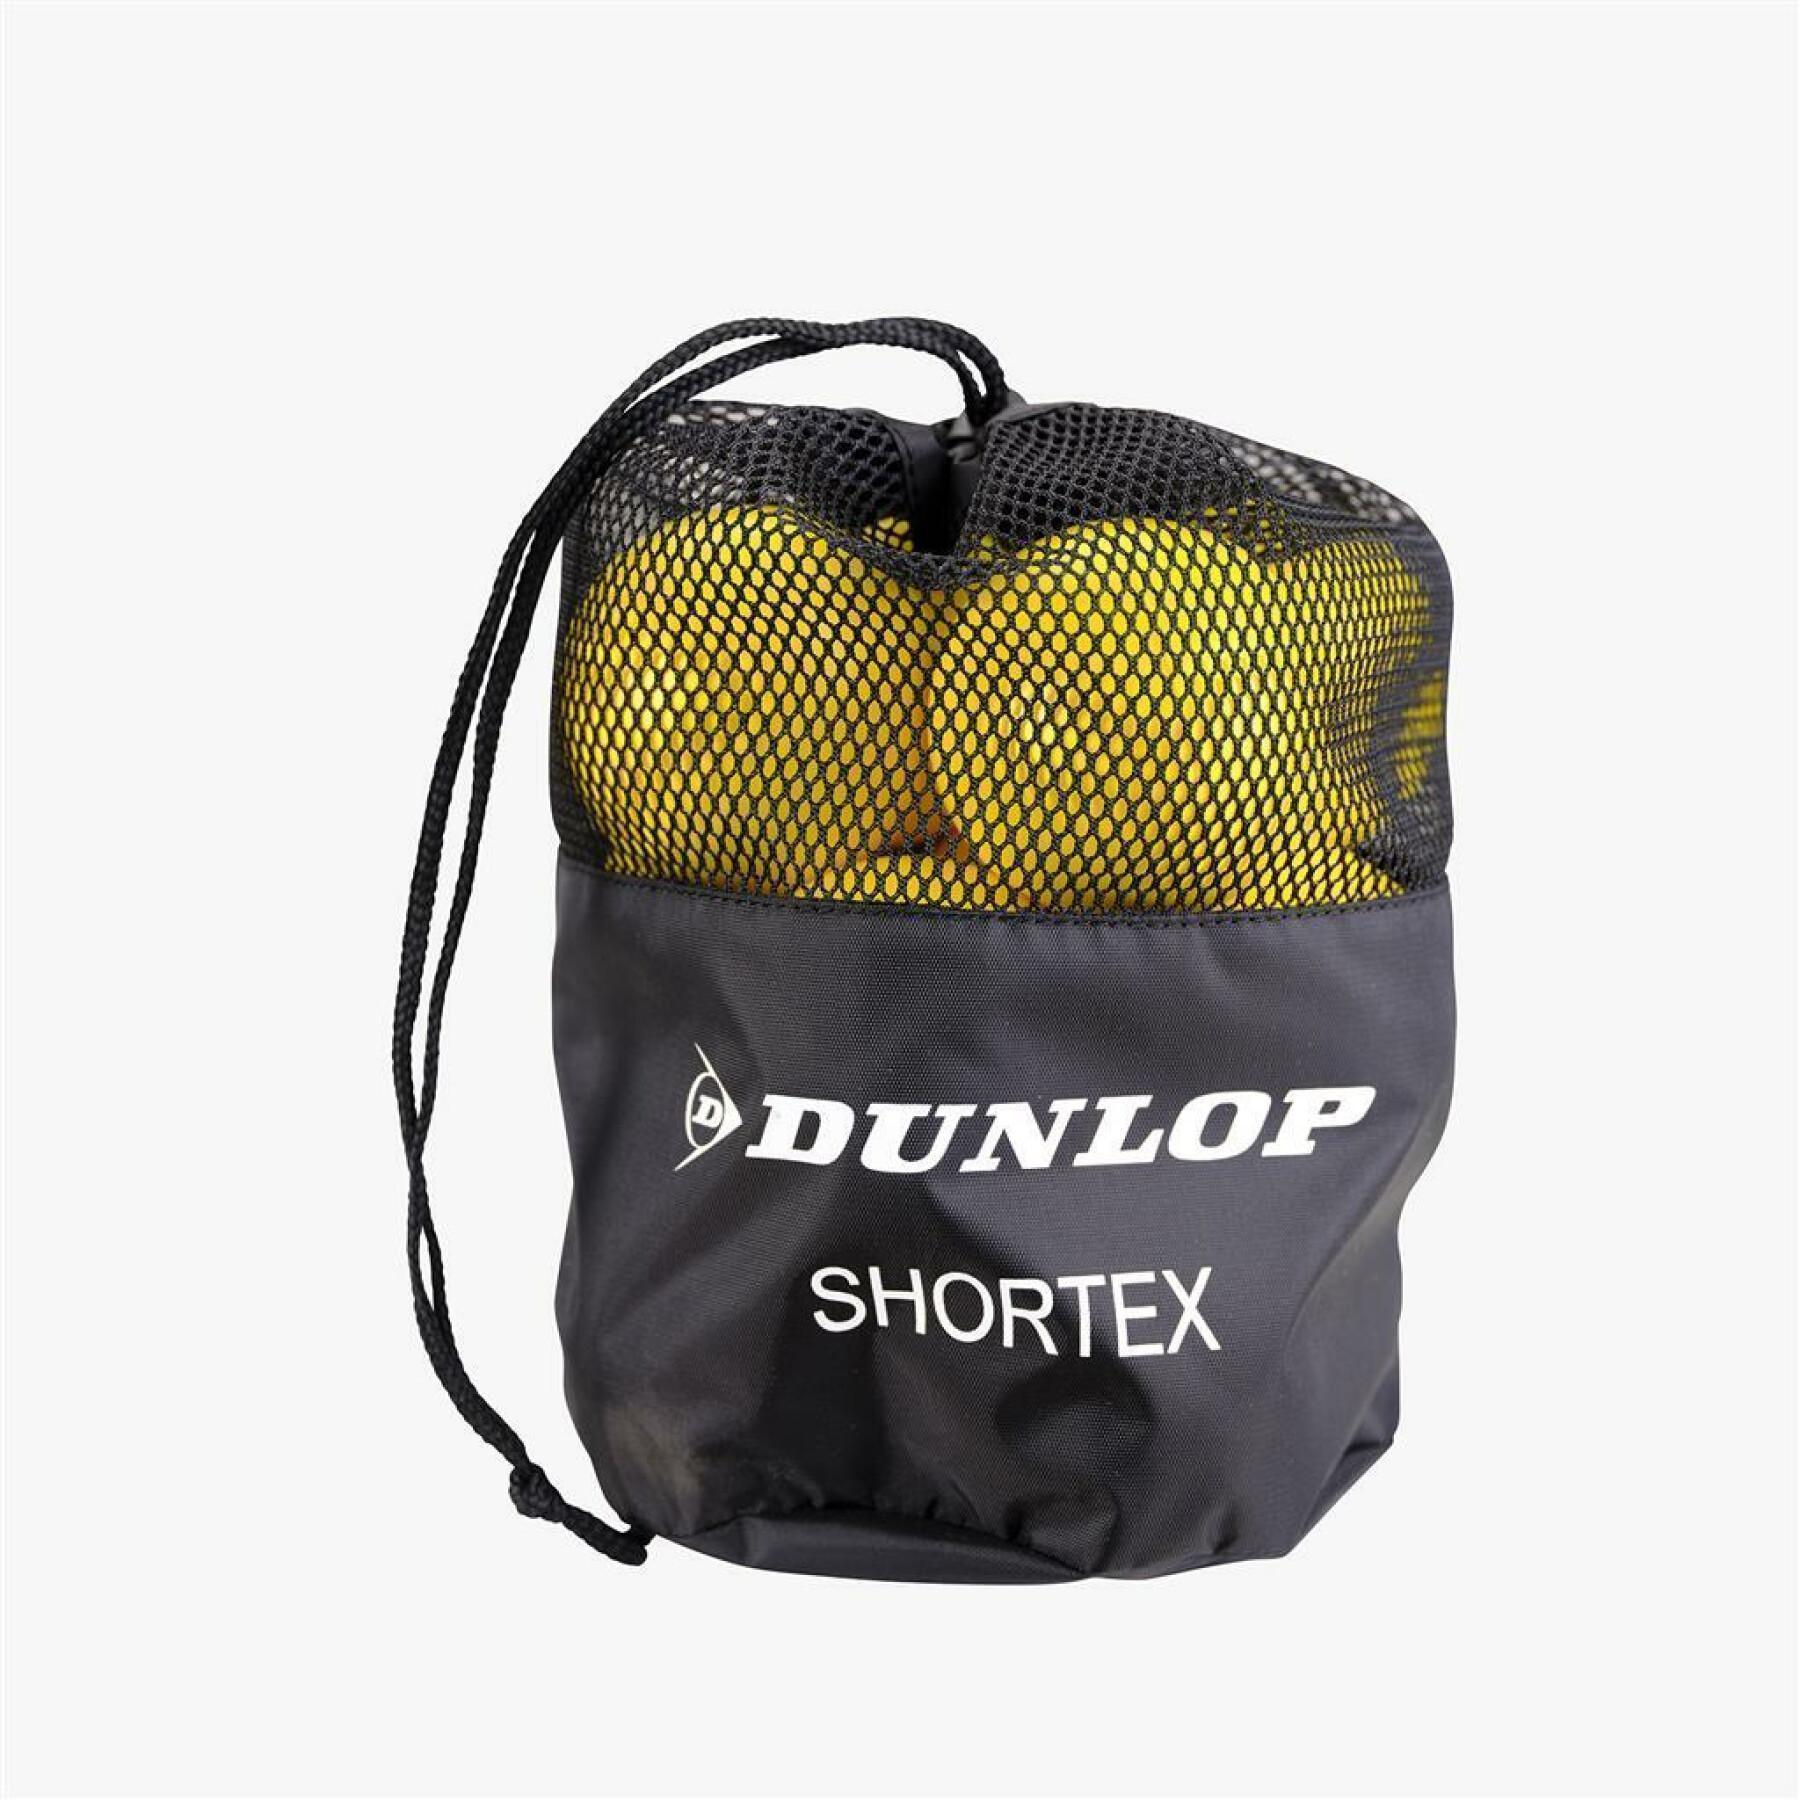 Set van 12 tennisballen Dunlop Shortex